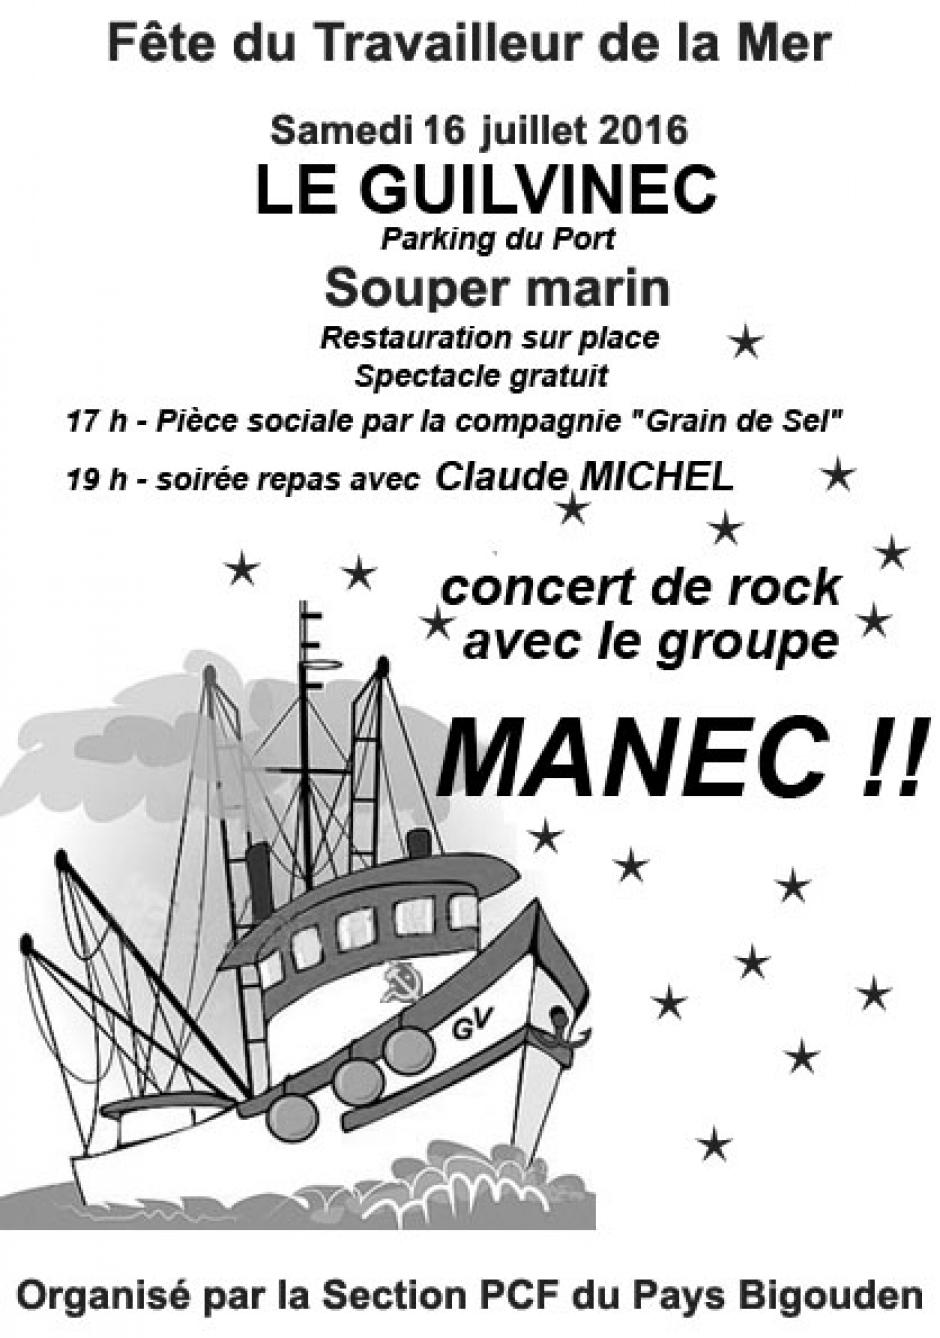 Fête du Travailleur bigouden et souper marin samedi 16 juillet à partir de 17h sur le port du Guilvinec